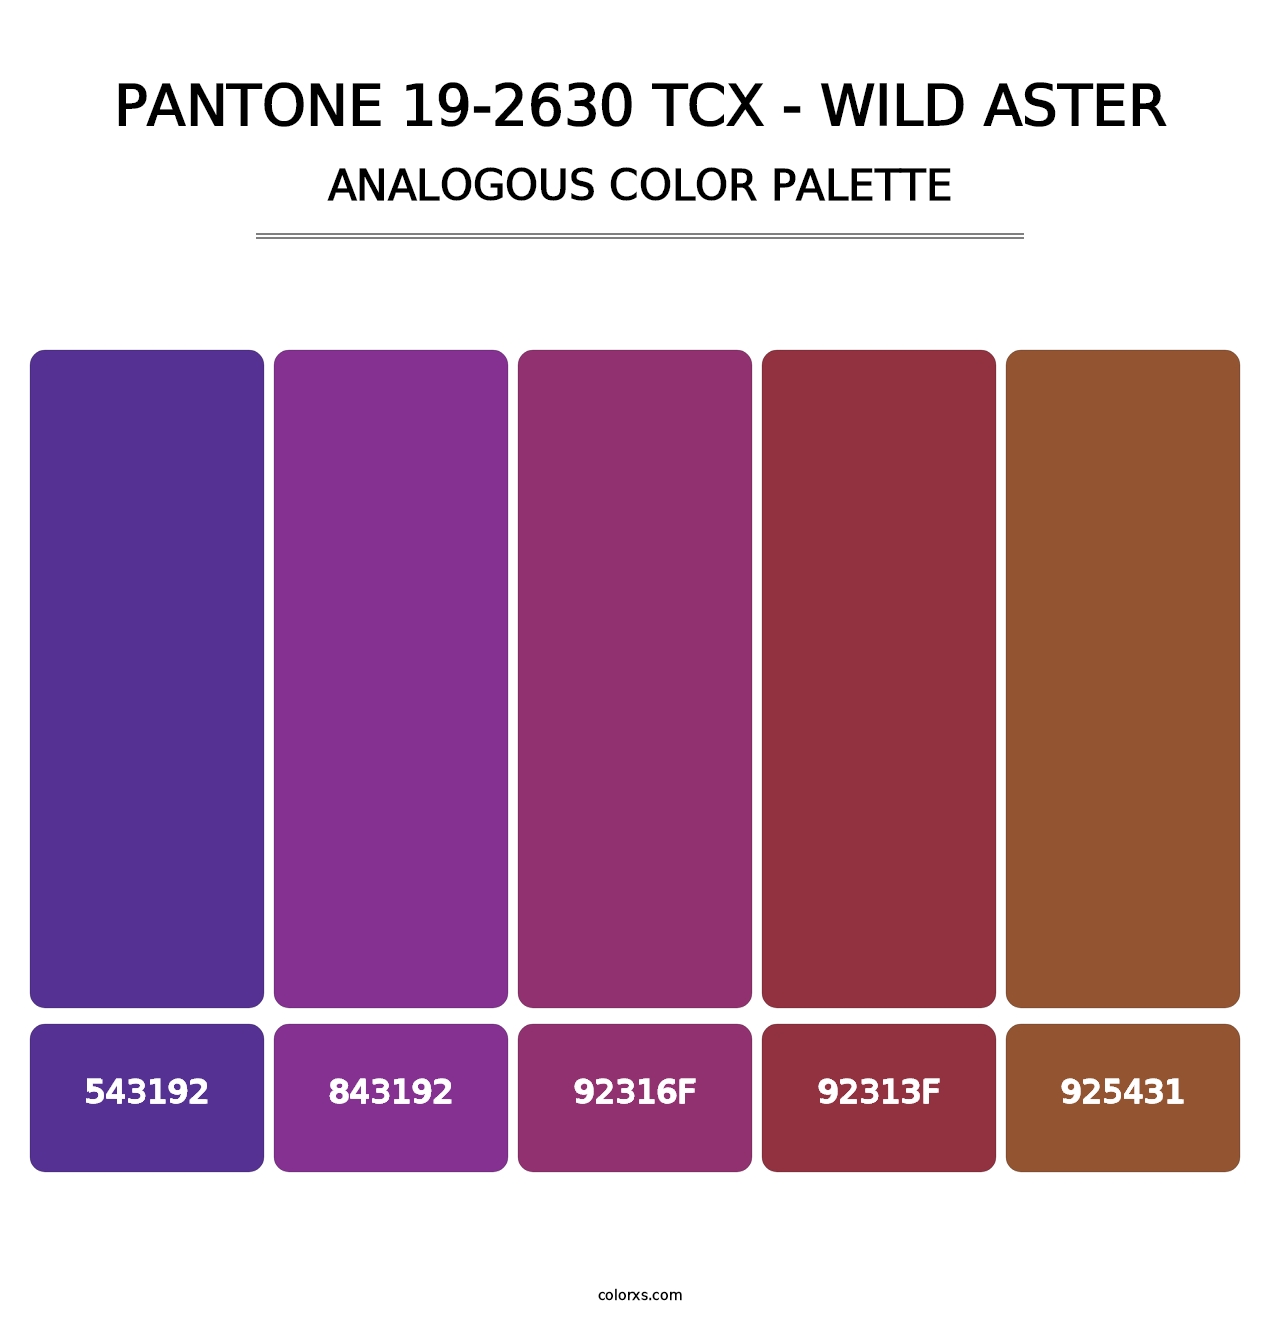 PANTONE 19-2630 TCX - Wild Aster - Analogous Color Palette